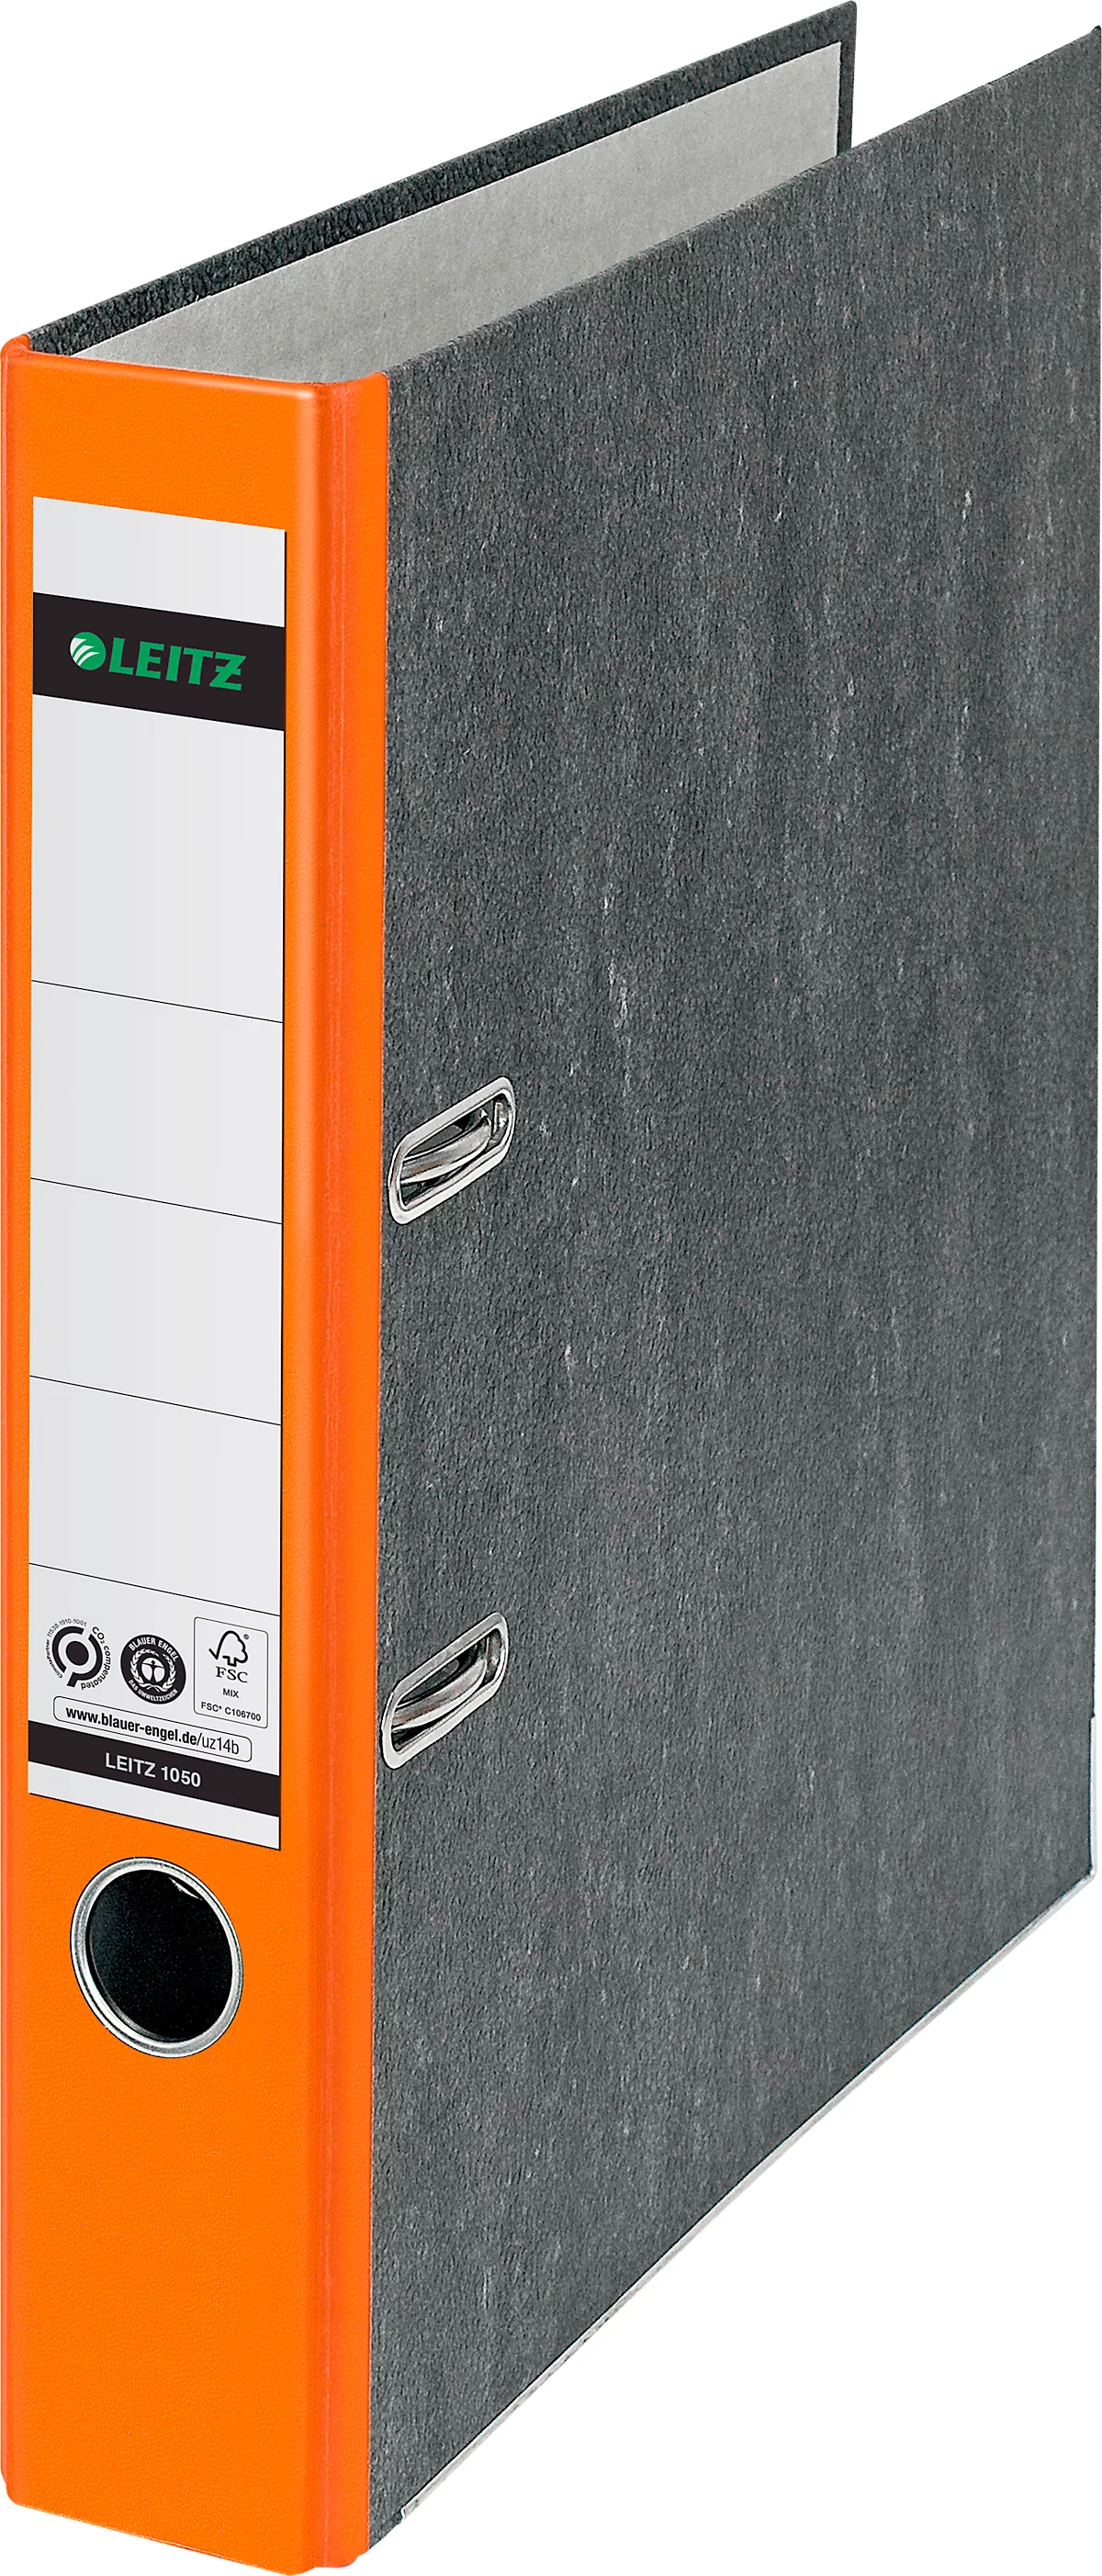 Carpeta LEITZ® 1050, DIN A4, ancho de lomo 52 mm, agujero para los dedos, etiqueta de lomo pegada, clima neutro, cartón duro, 1 unidad, naranja